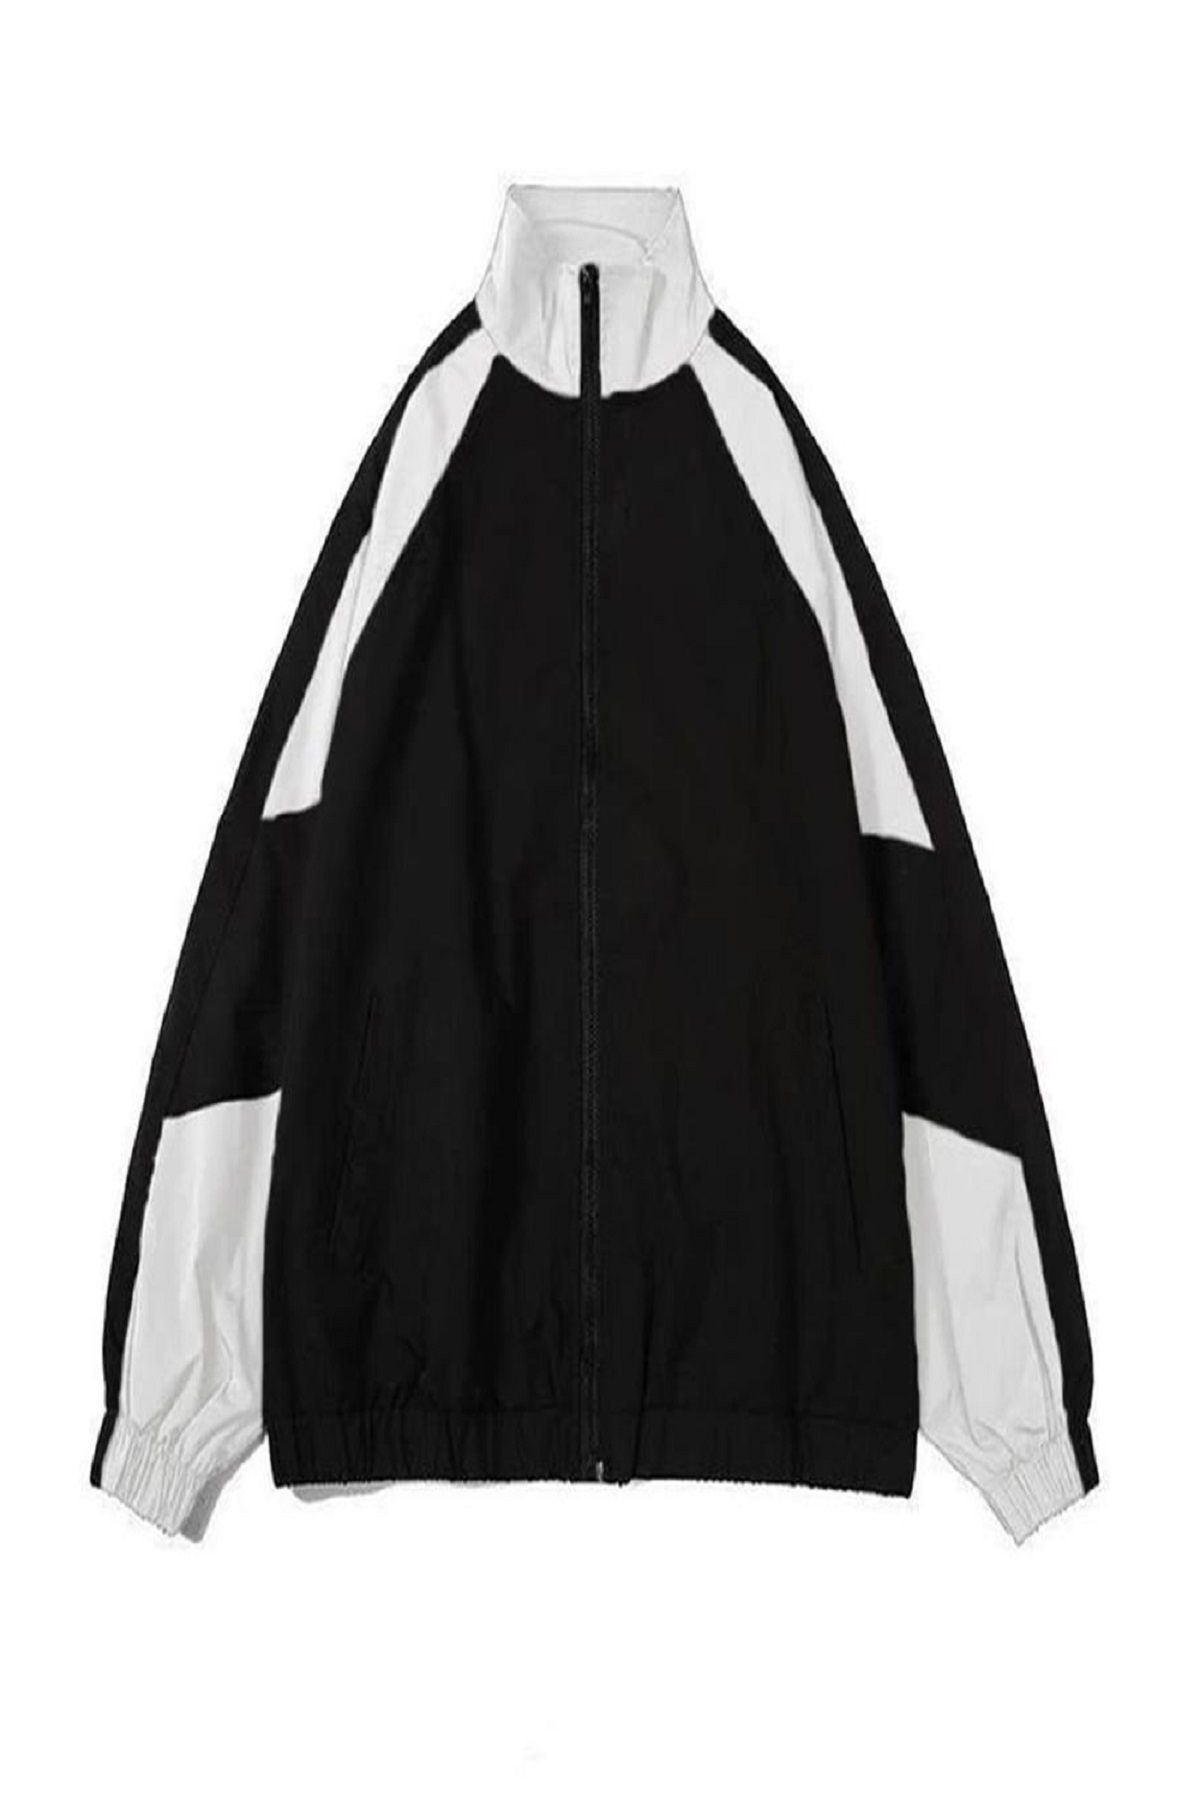 Köstebek NEFİGO Retro Beyaz Şerit Detaylı Siyah Paraşüt Ceket